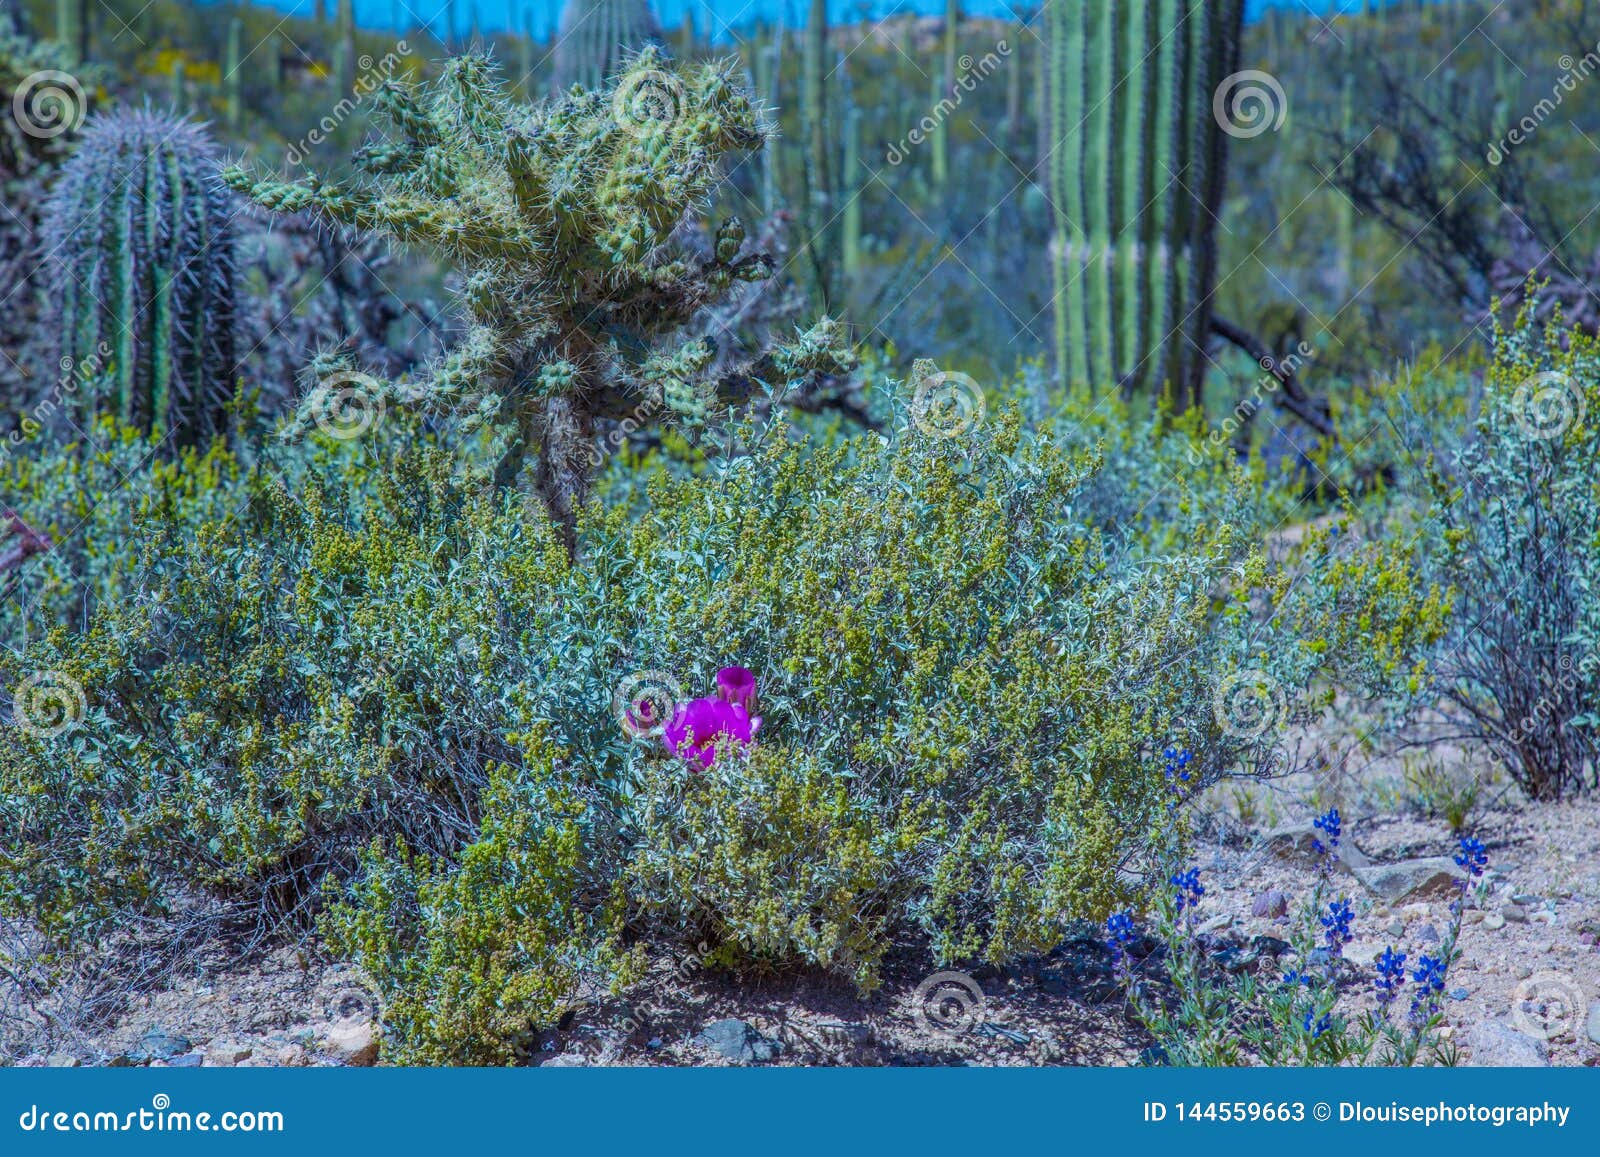 arizona saguaro national park wildflowers and cactus